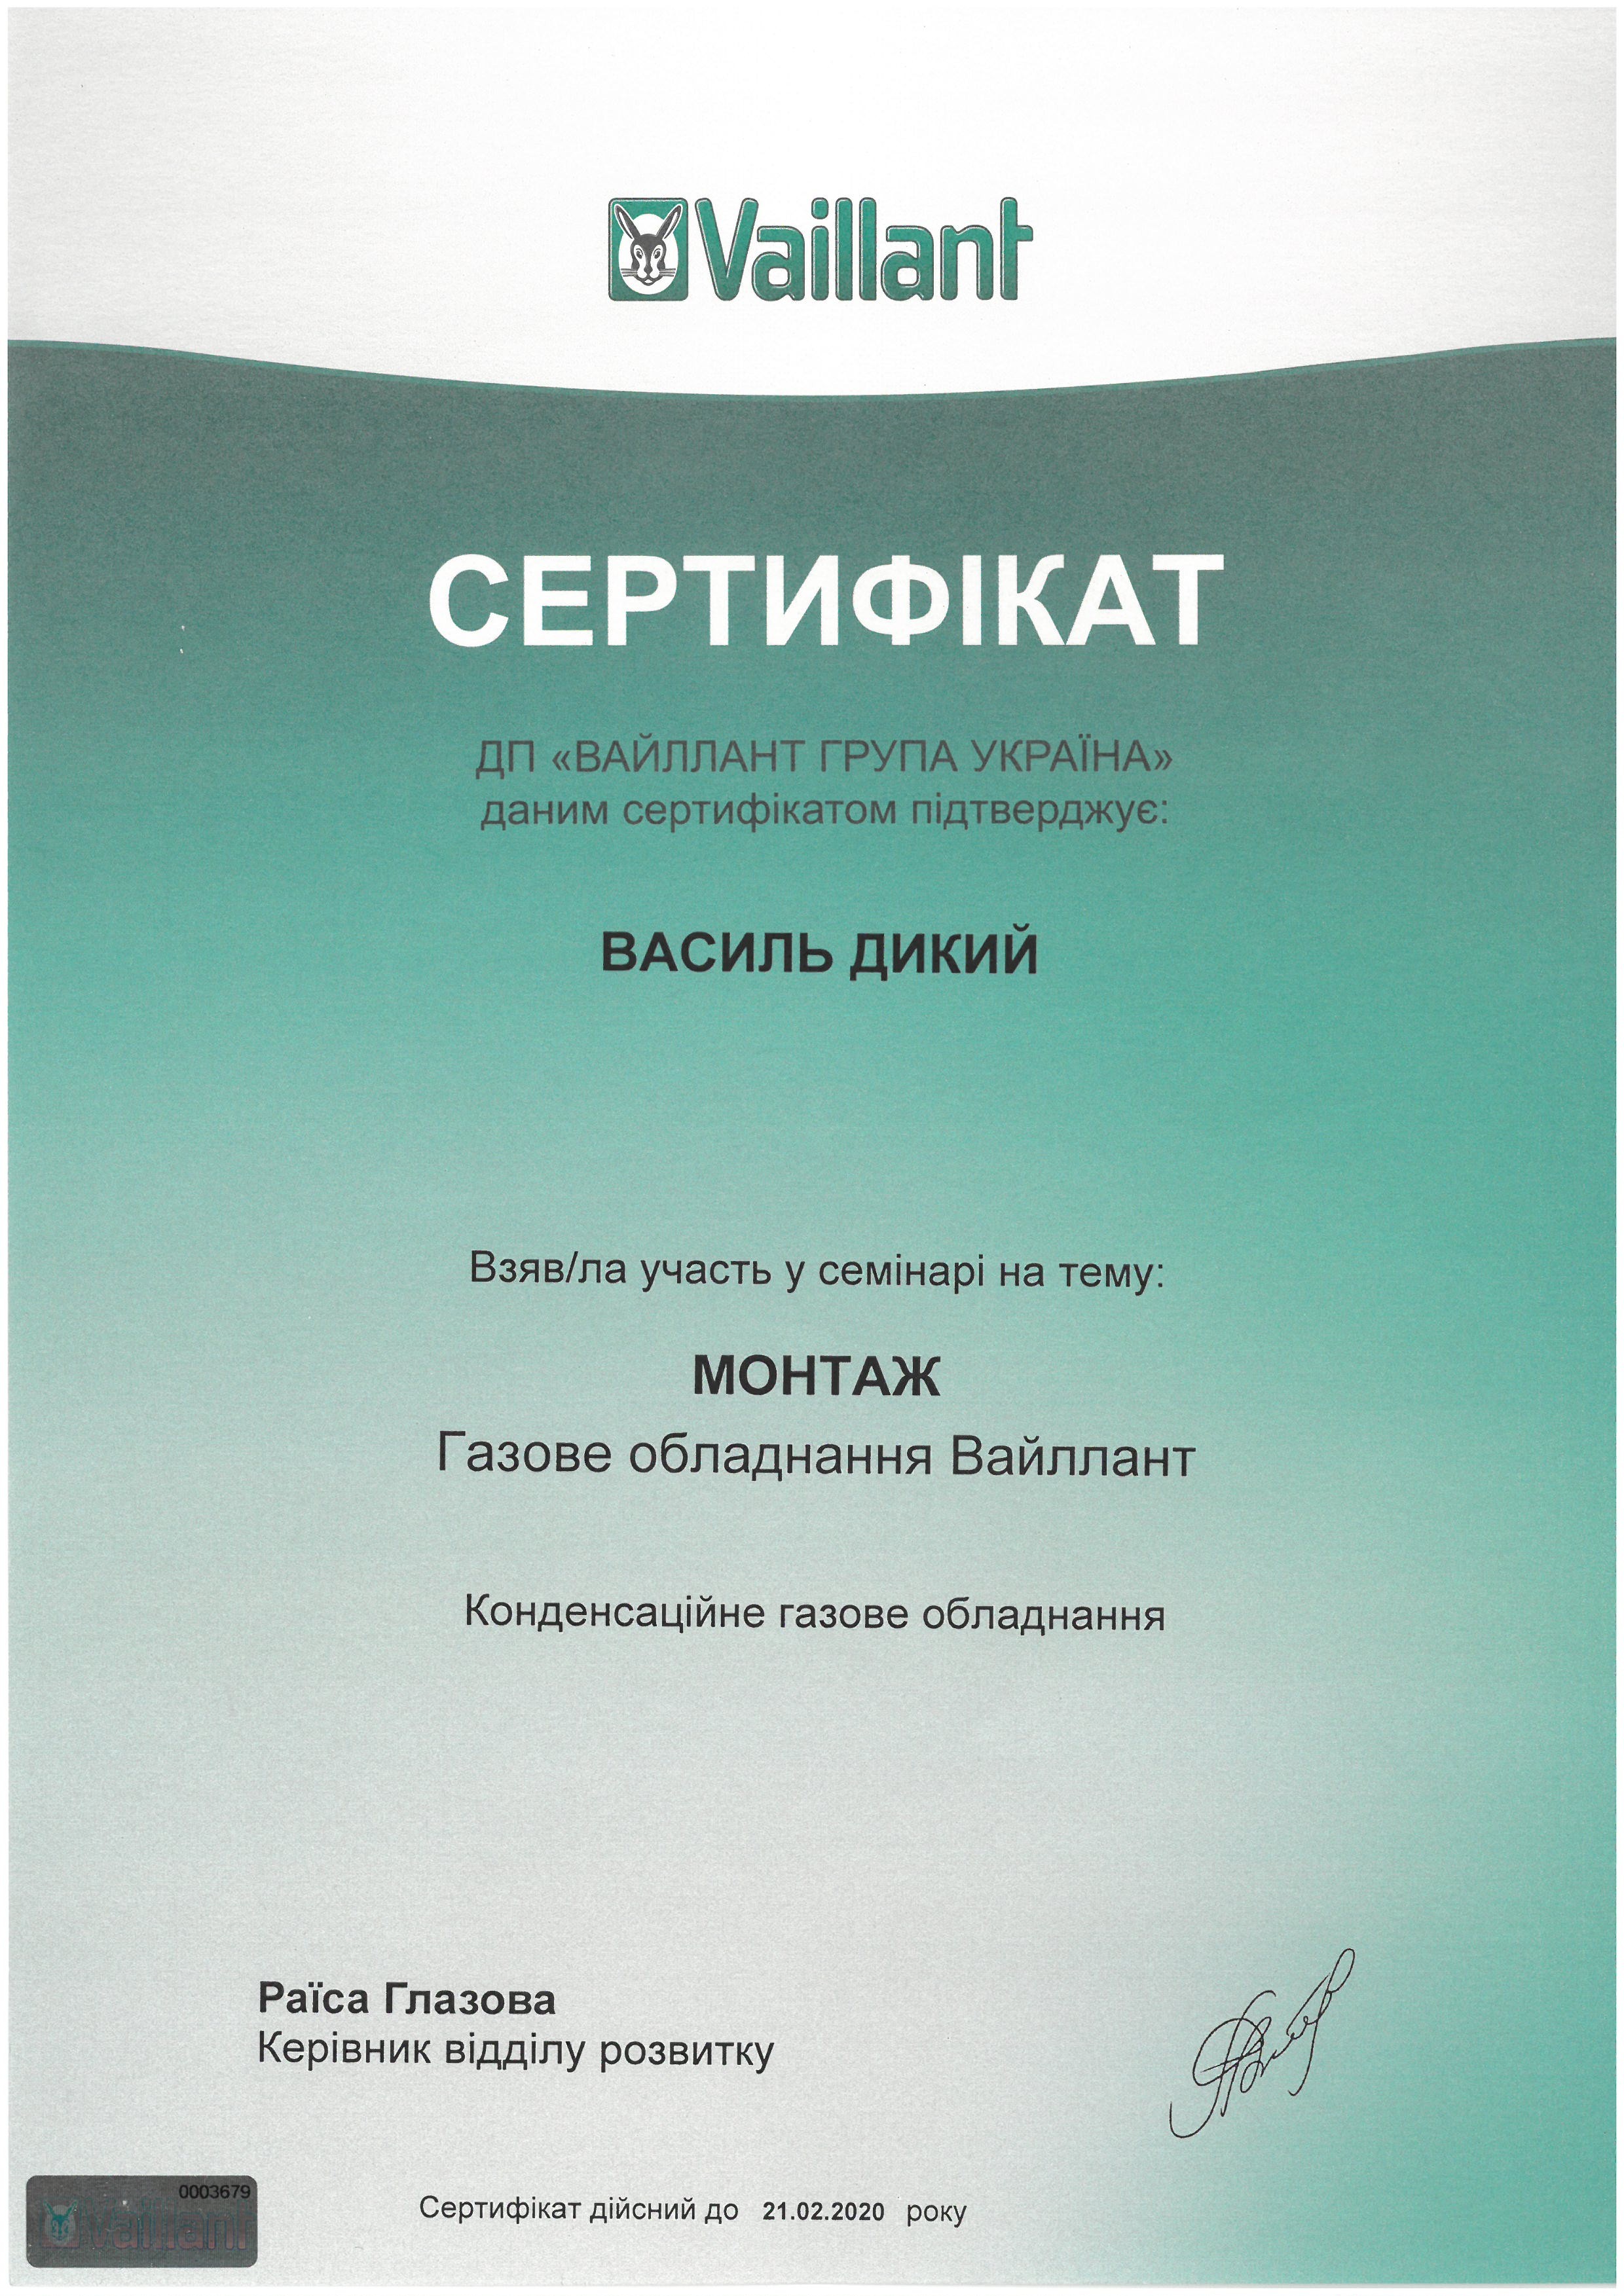 Сертифікат Vaillant, монтаж. Сервісний центр KOTLOV, Ірпінь.